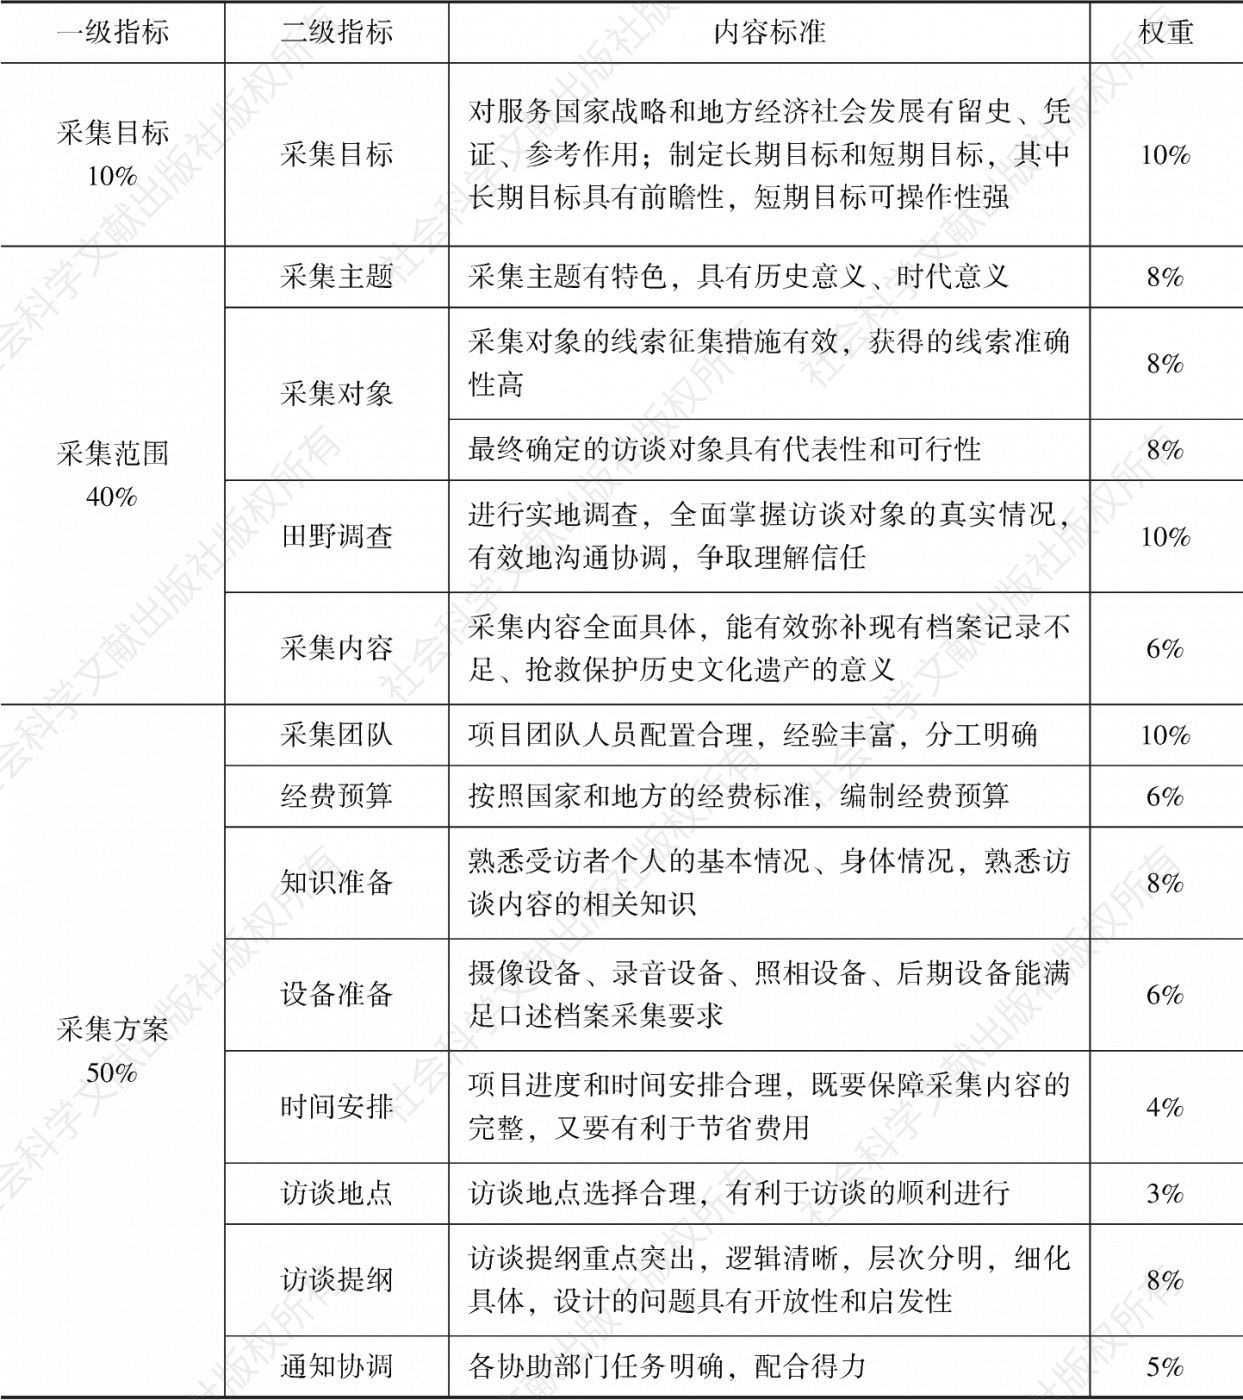 表3-1 云南少数民族口述档案采集计划指标体系及标准